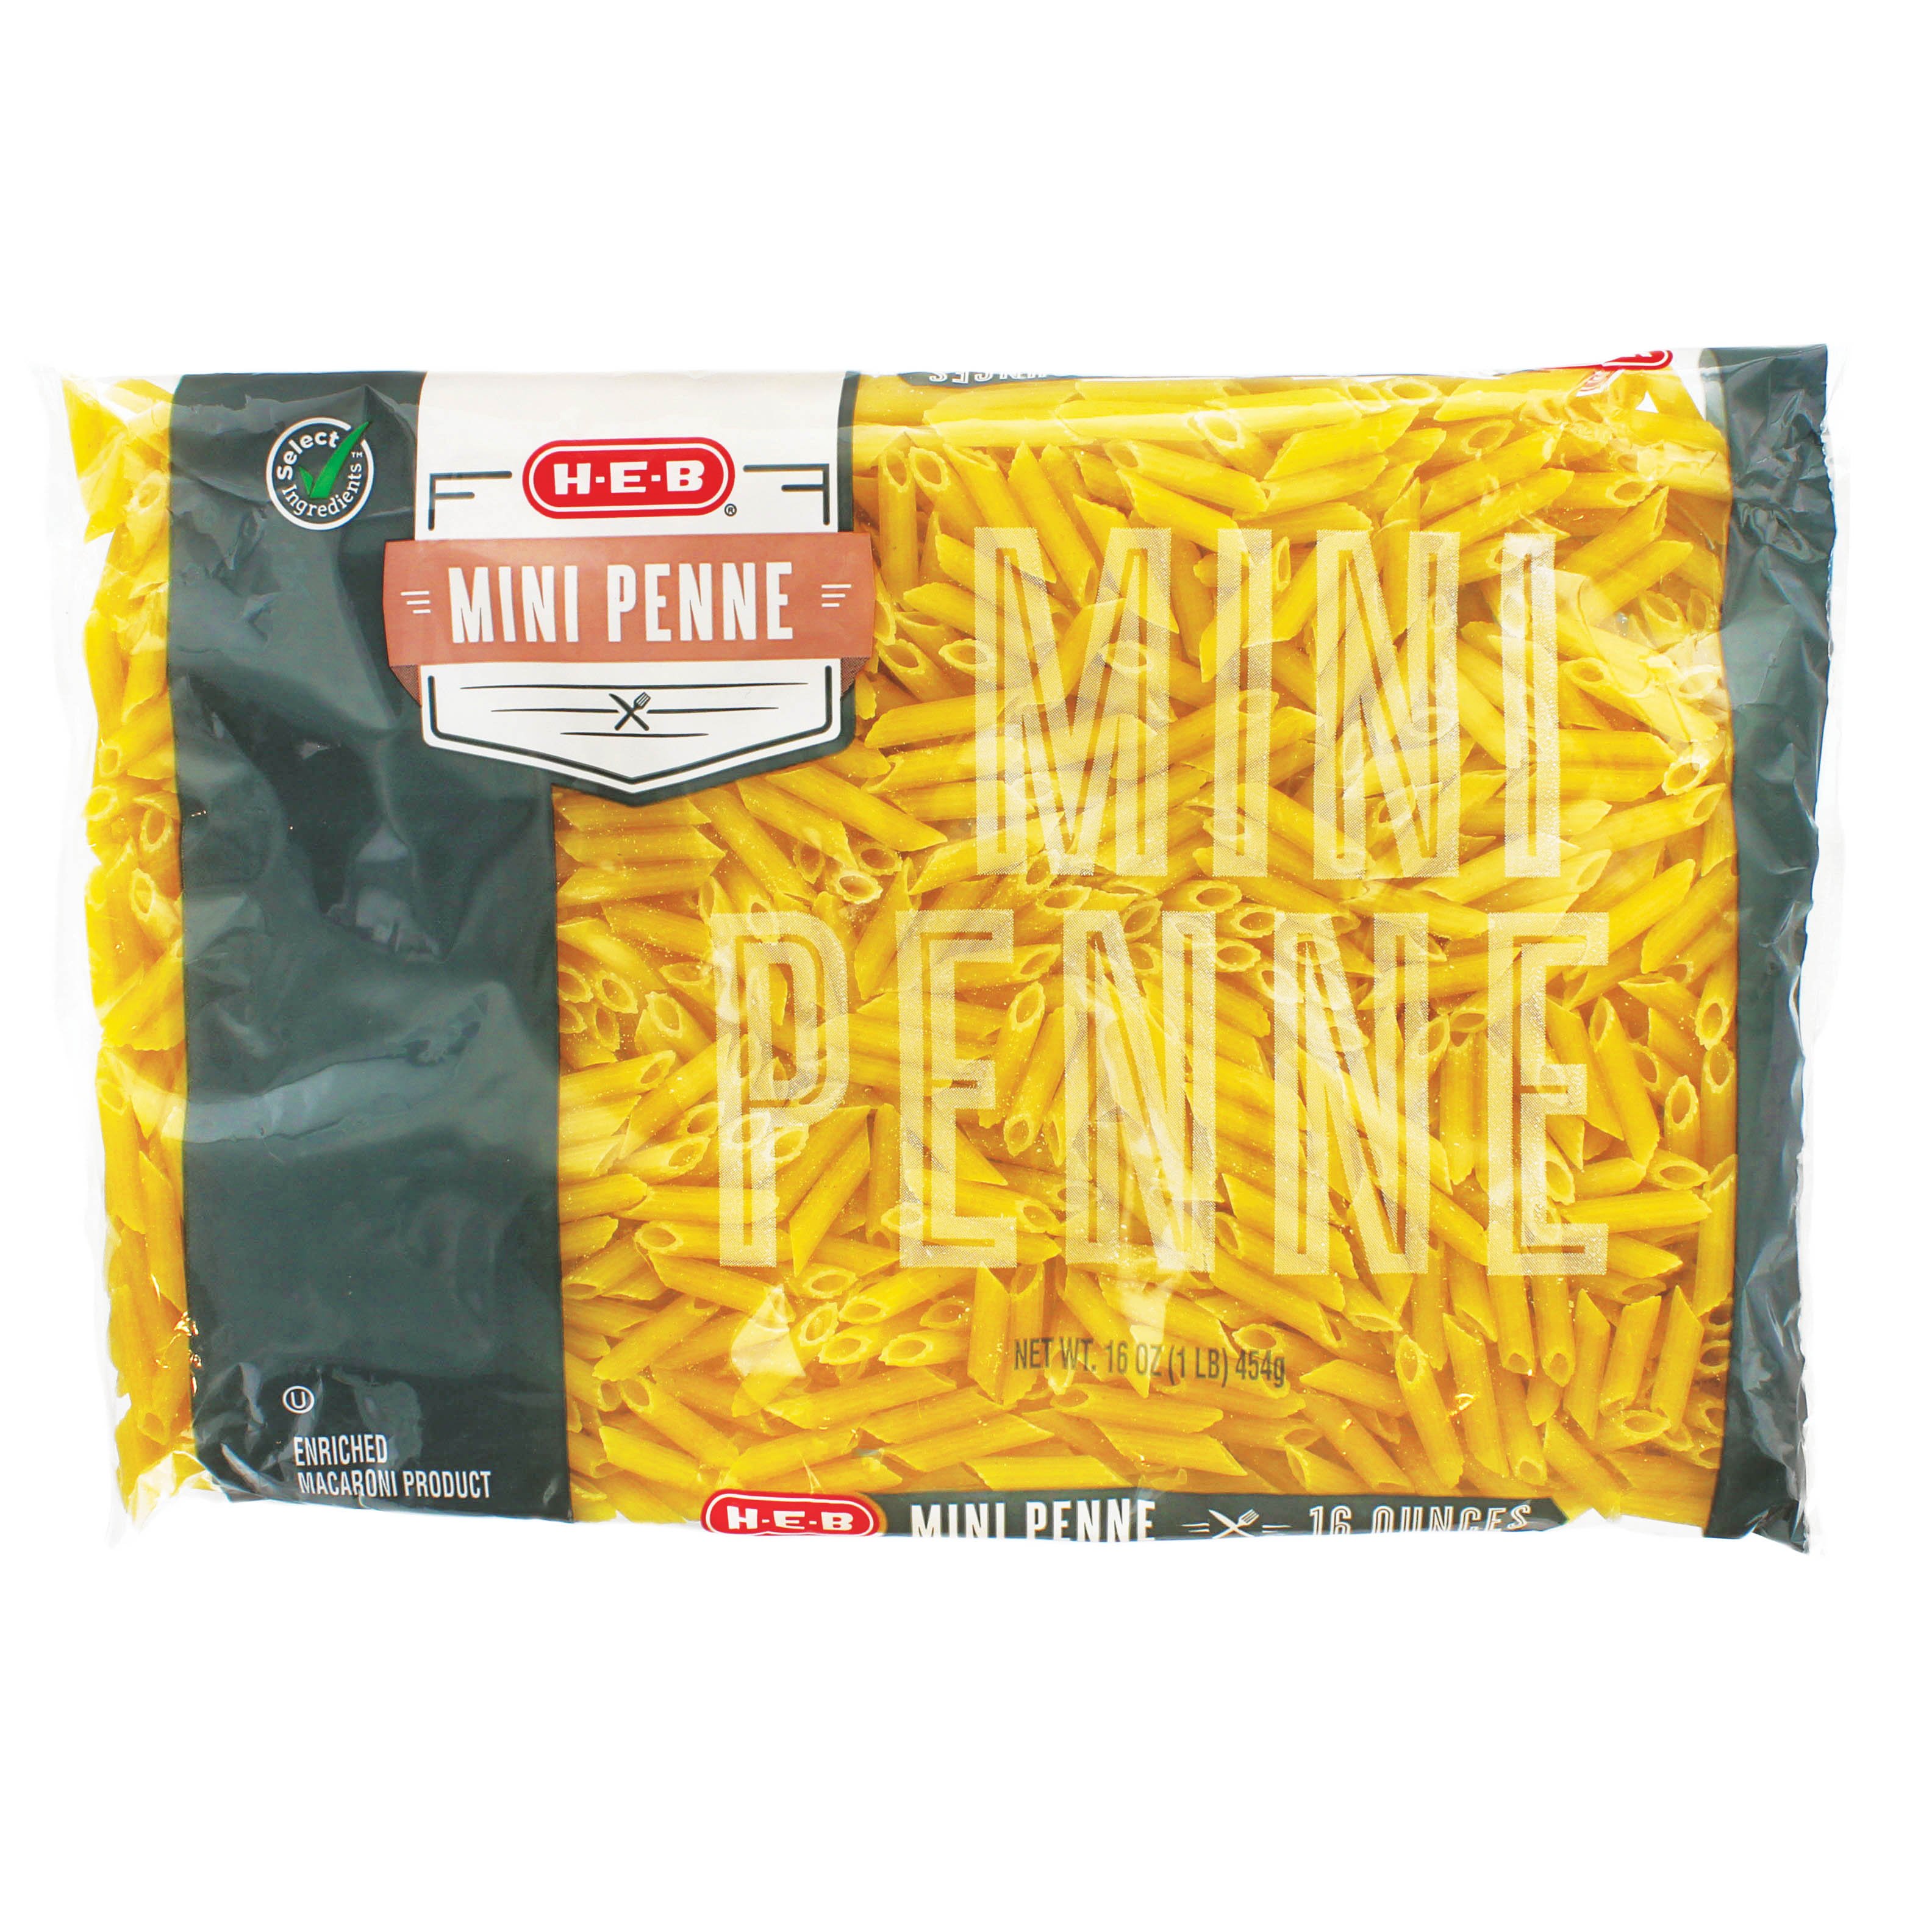 H-E-B Mini Penne Pasta Noodles